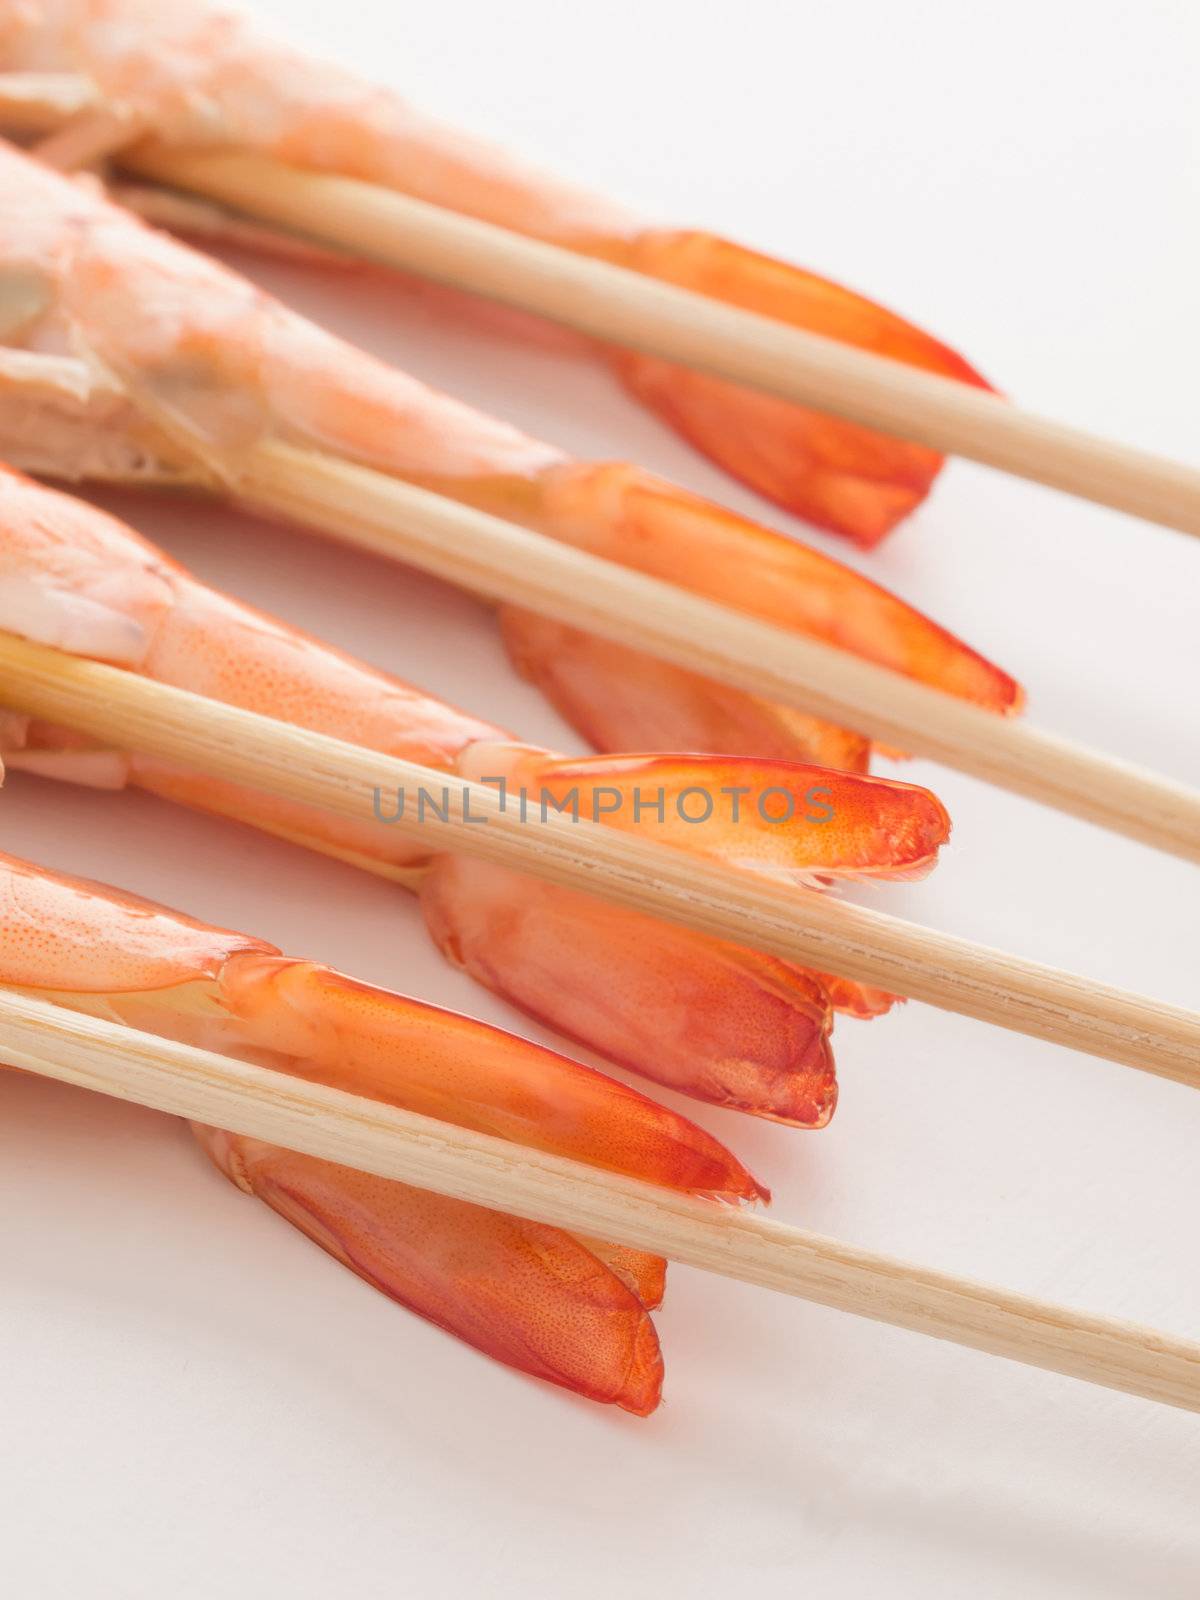 shrimp skewers by zkruger